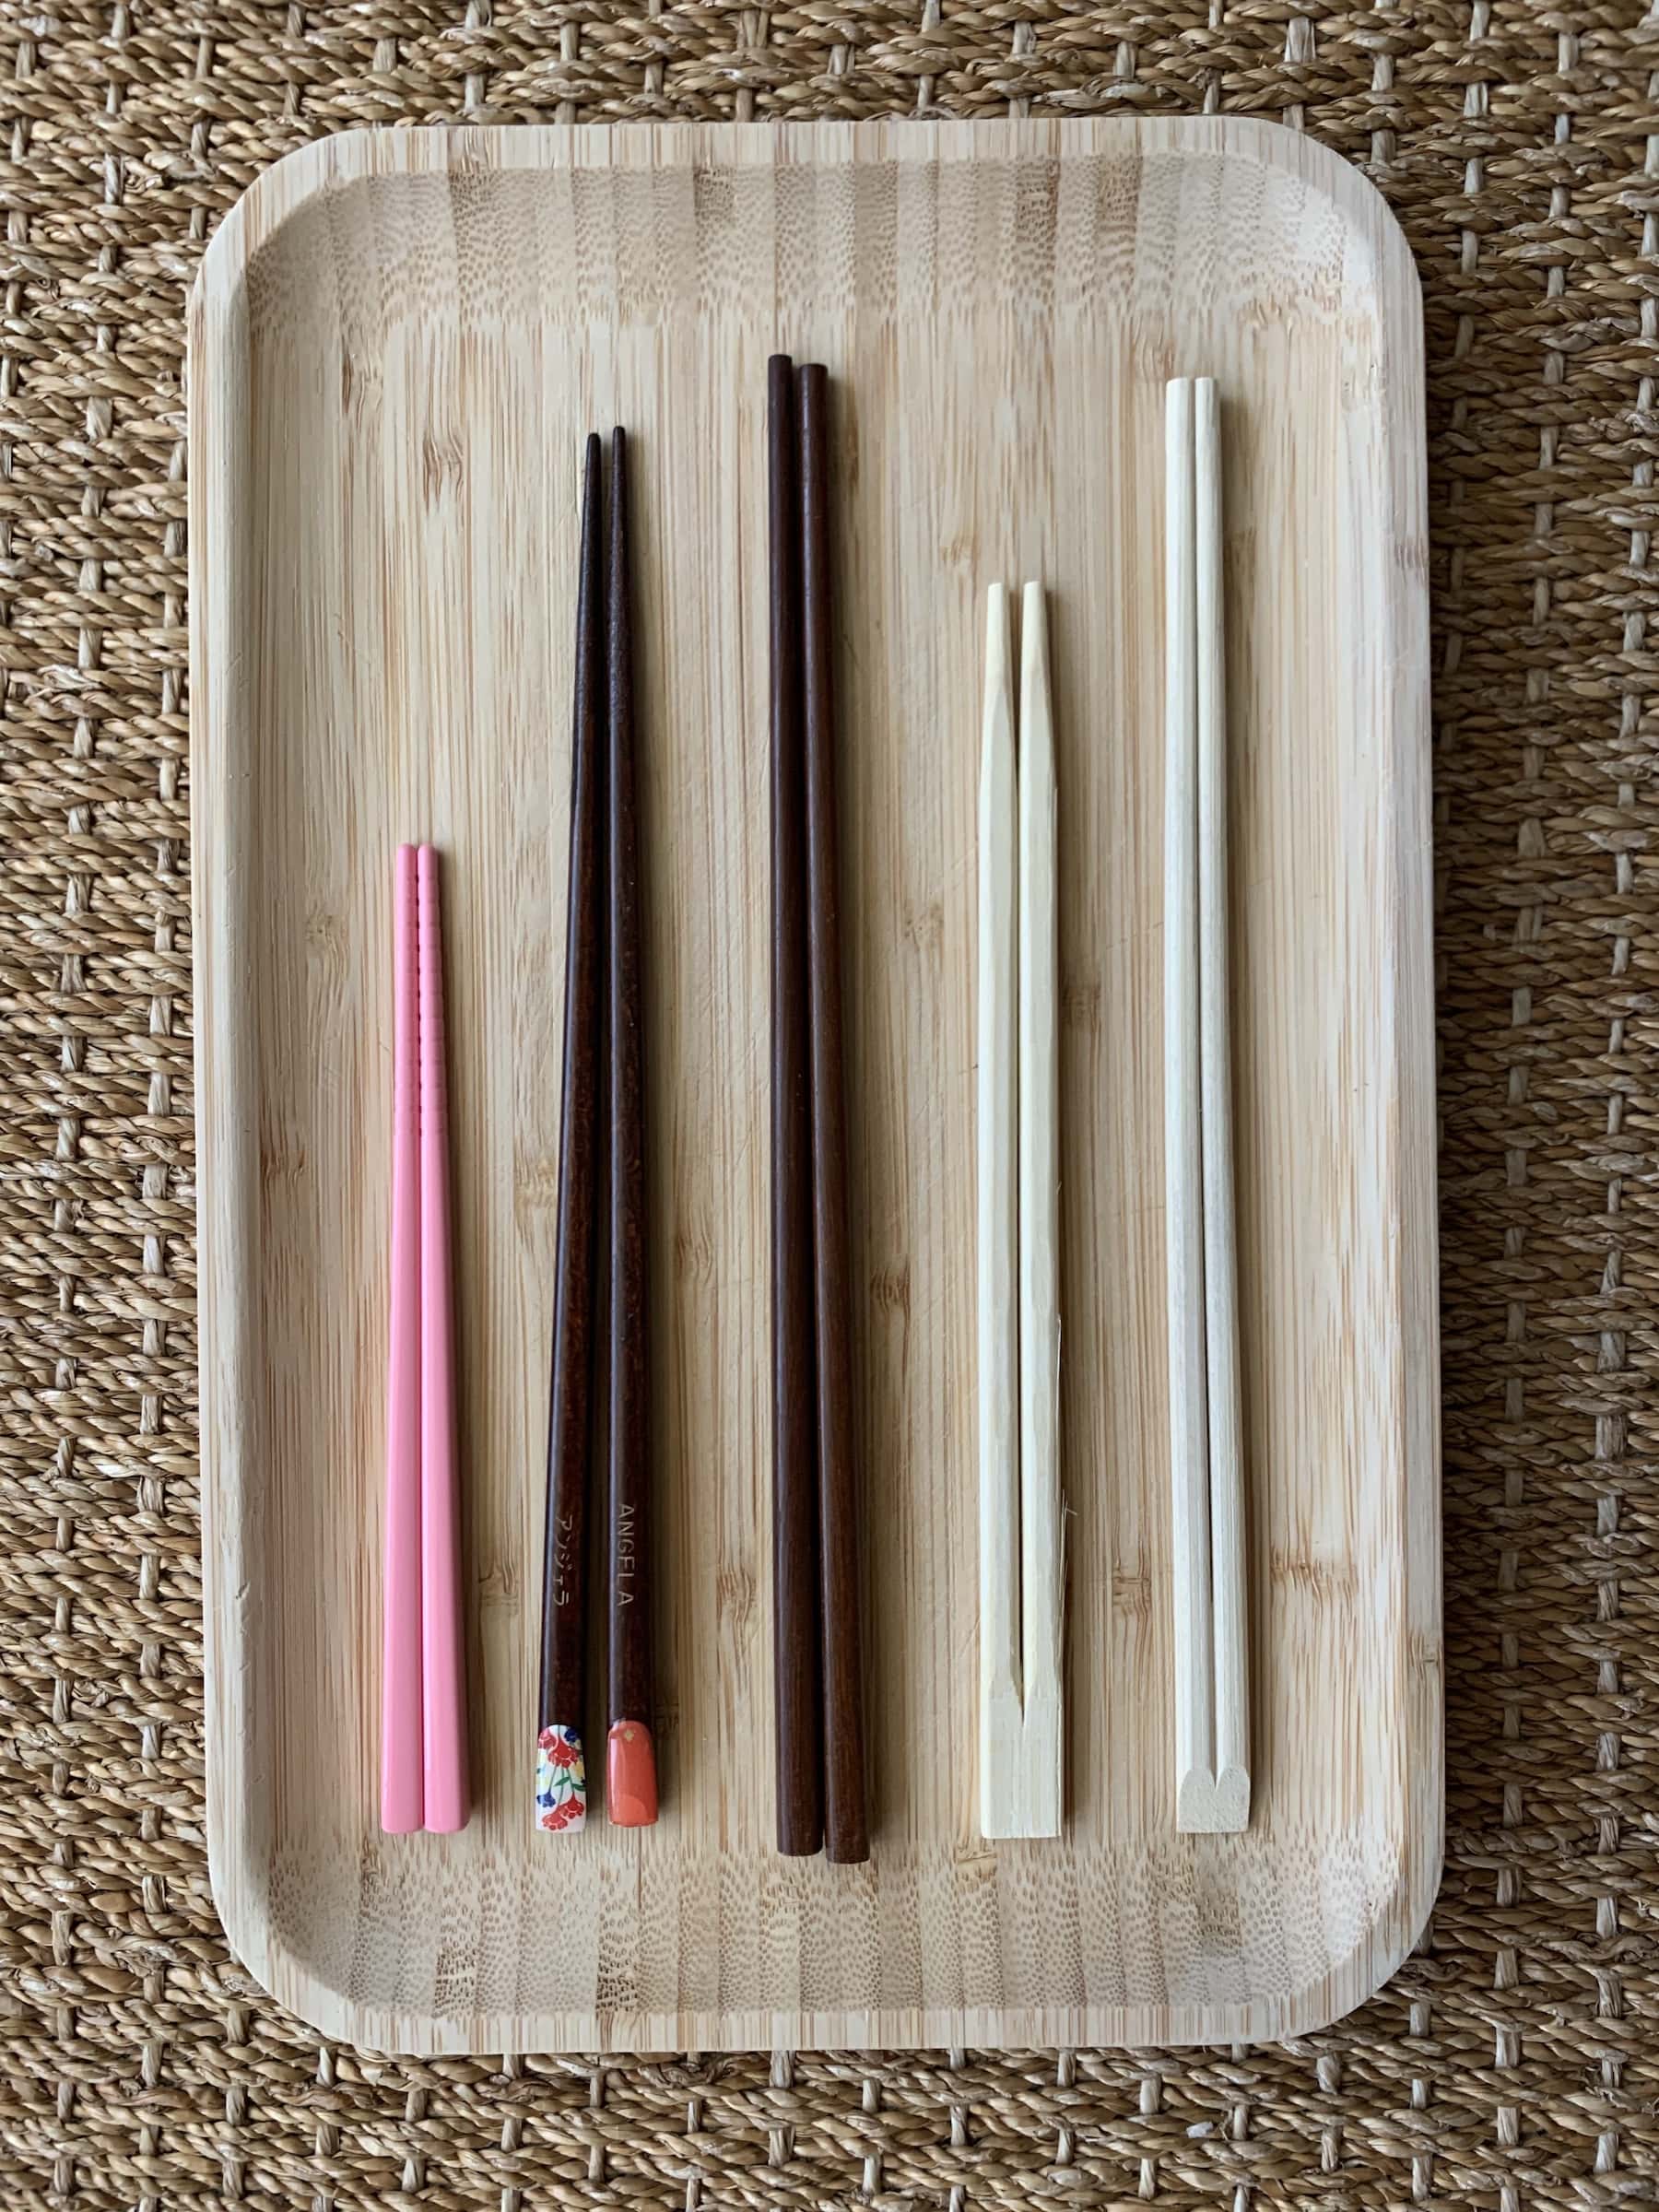 Different Chopsticks